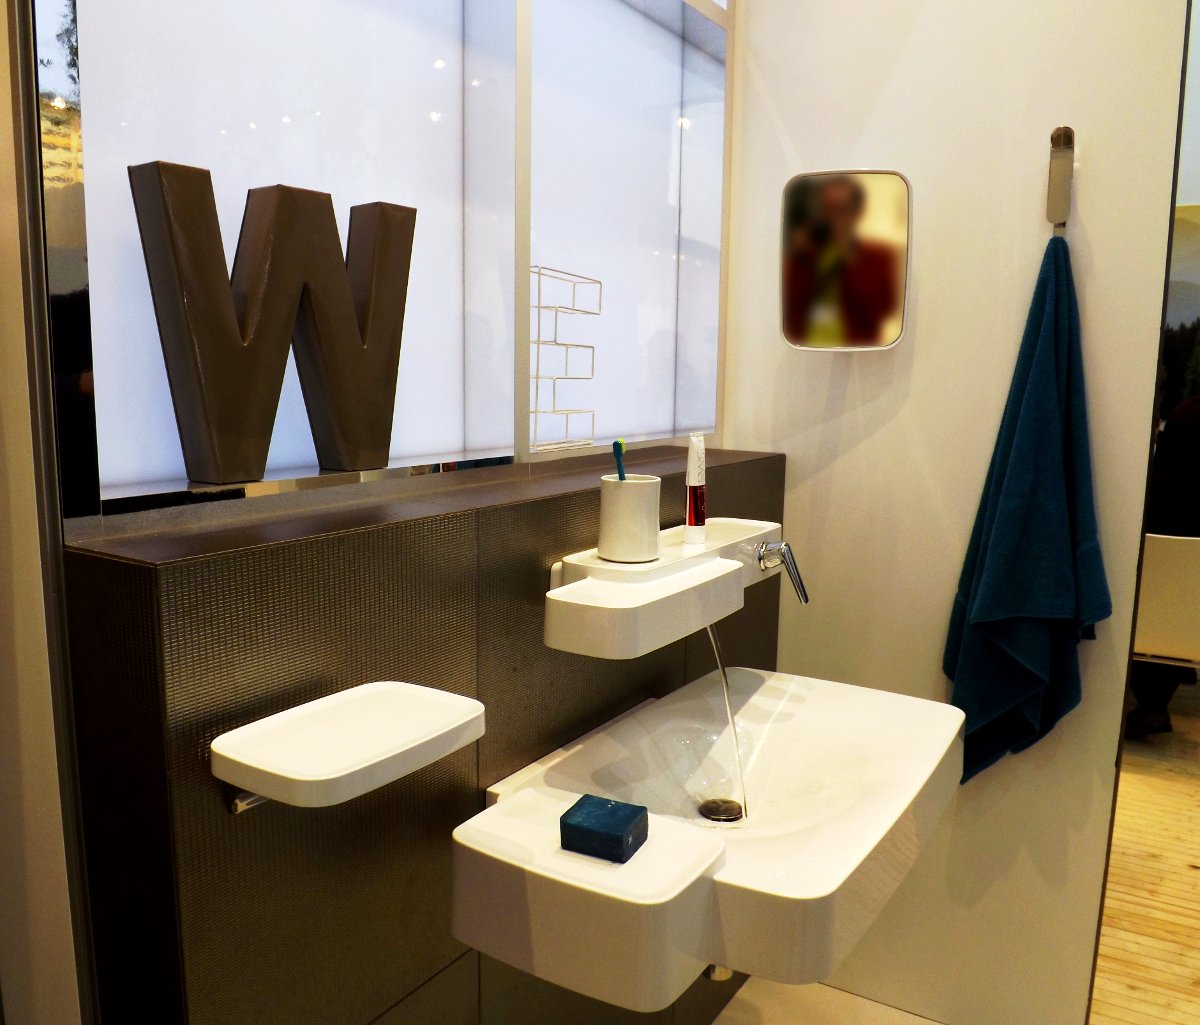 Демонстрация комплекта сантехники для ванной от Hansgrohe на выставке МосБилд-2013